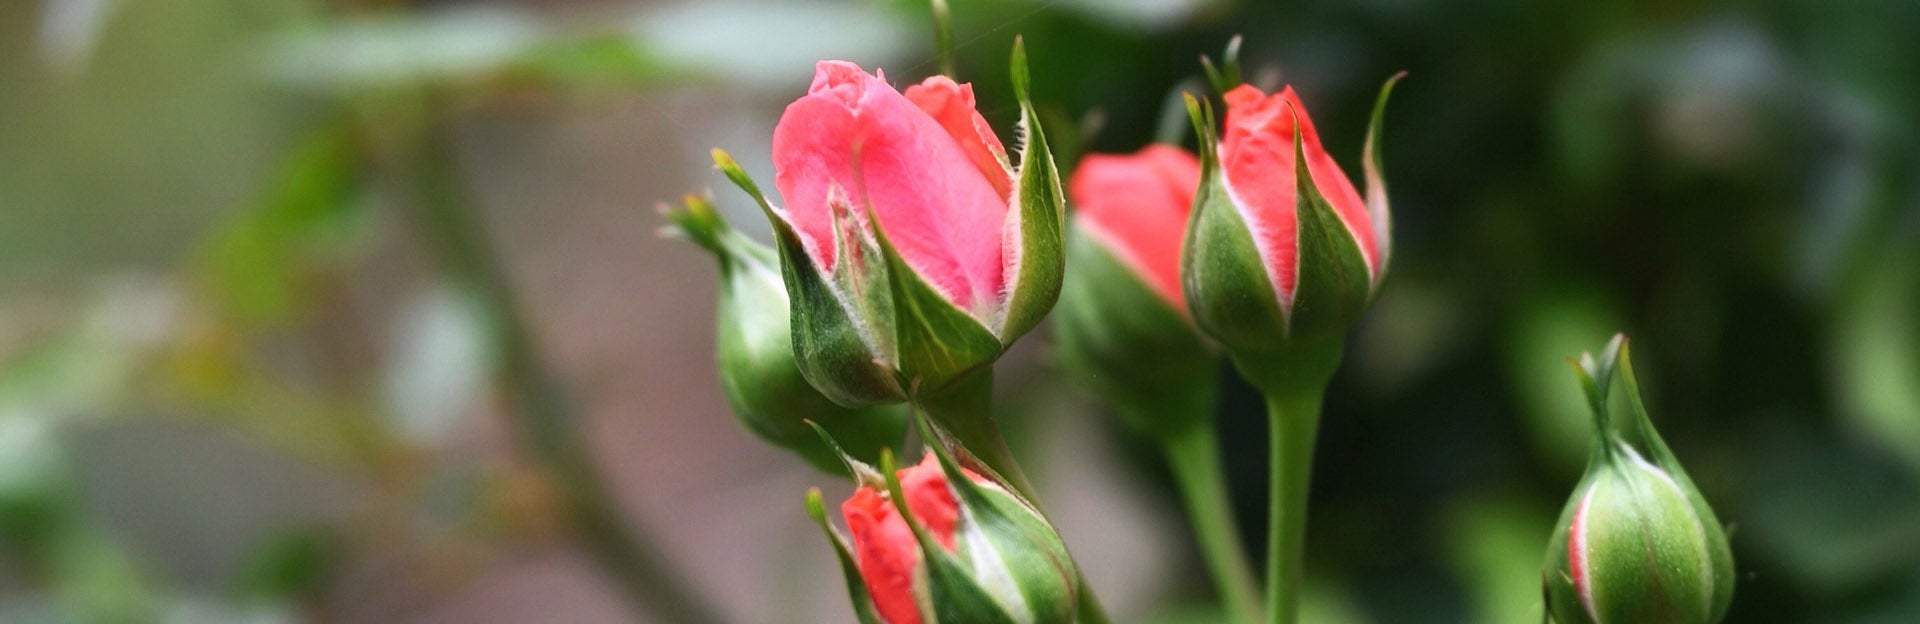 UCR Botanic Gardens, Annual Rose Pruning